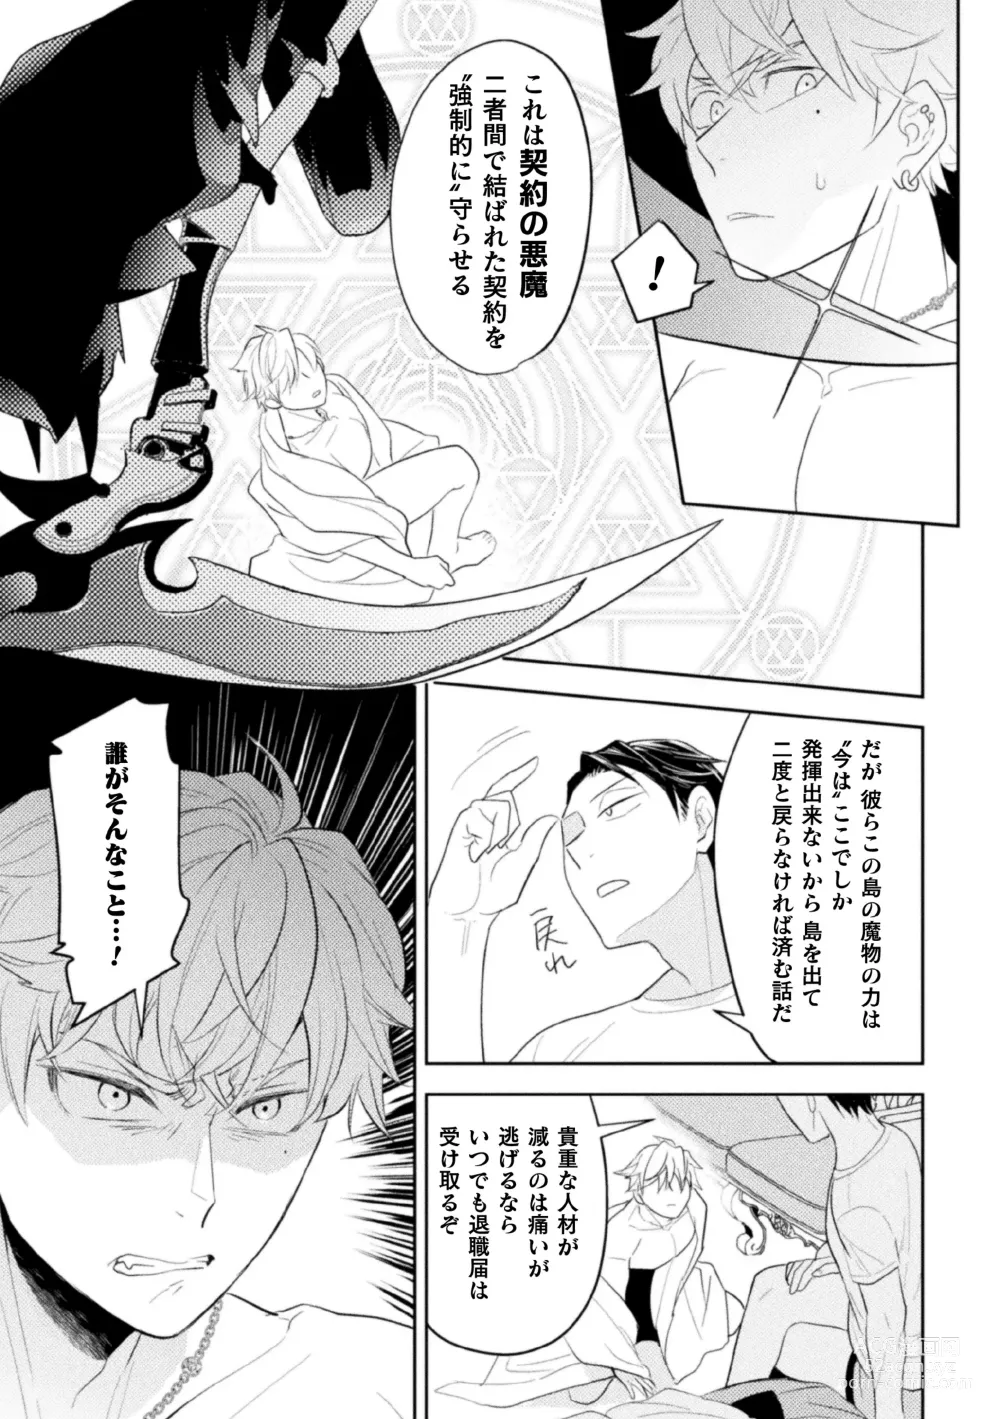 Page 37 of manga Zekkai Rougoku 3 Hatsujou Fukahi no Gekokujou